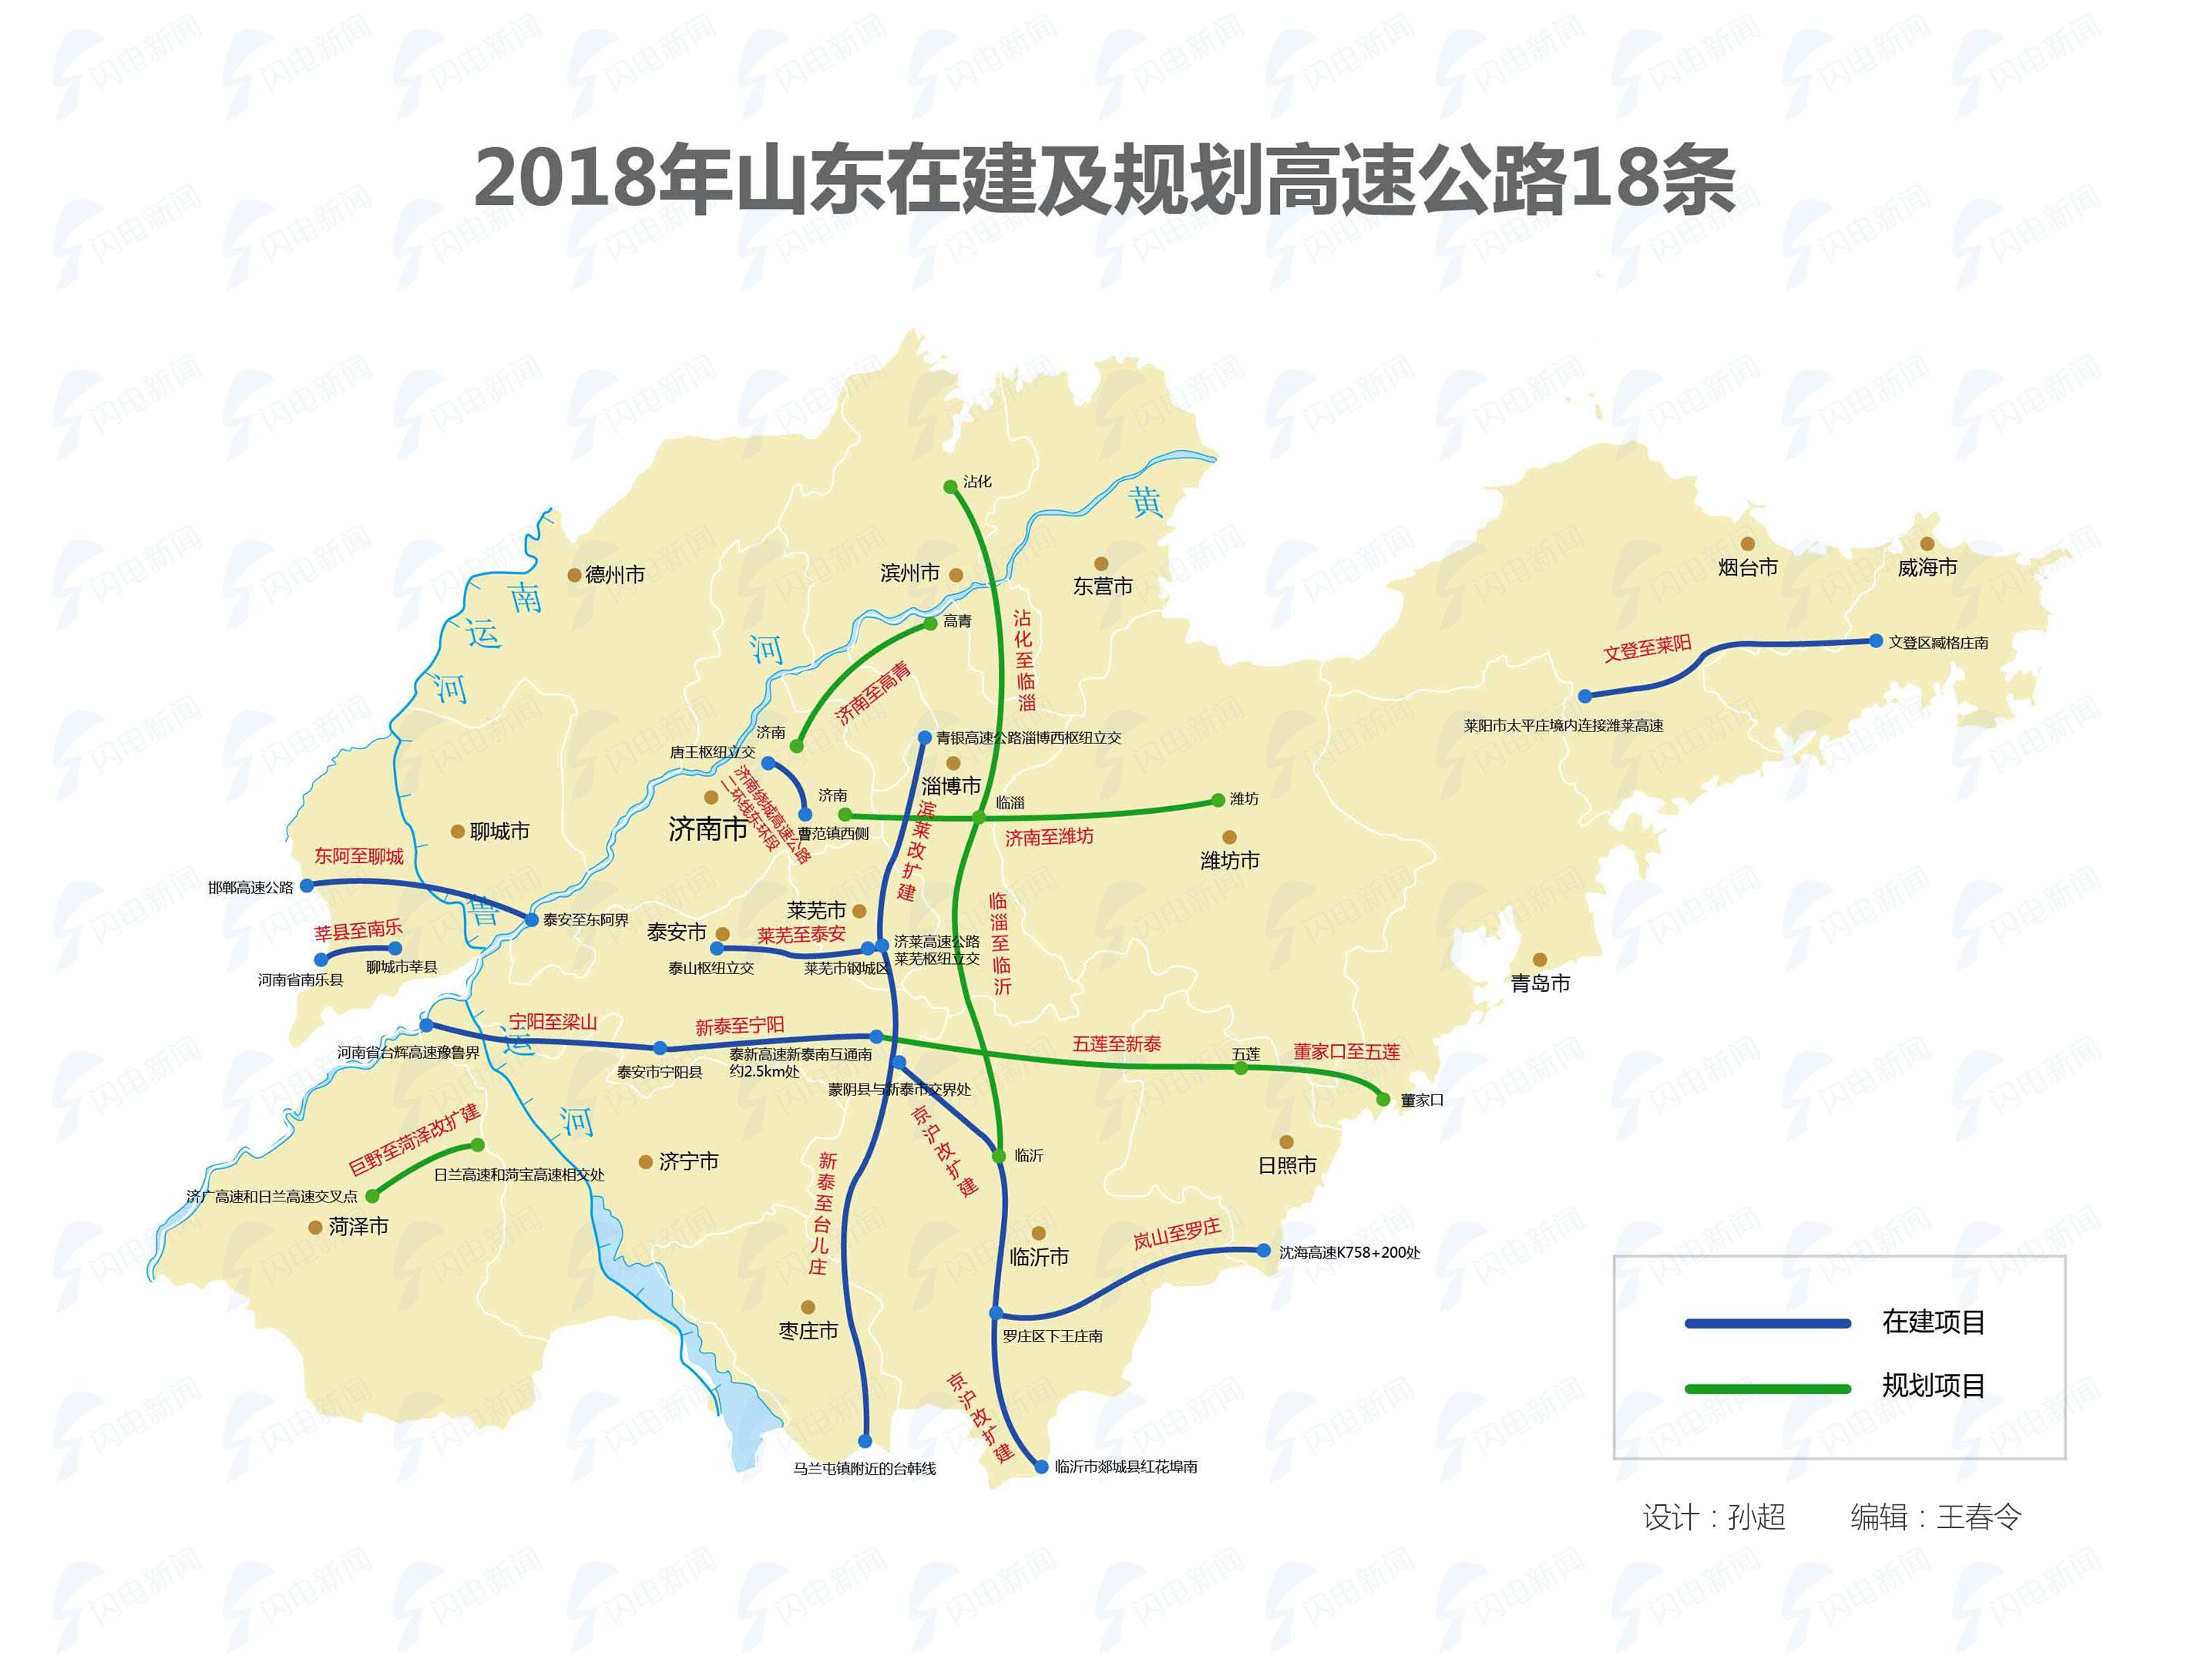 山东2018年将建高速公路18条 最全线路图来袭!